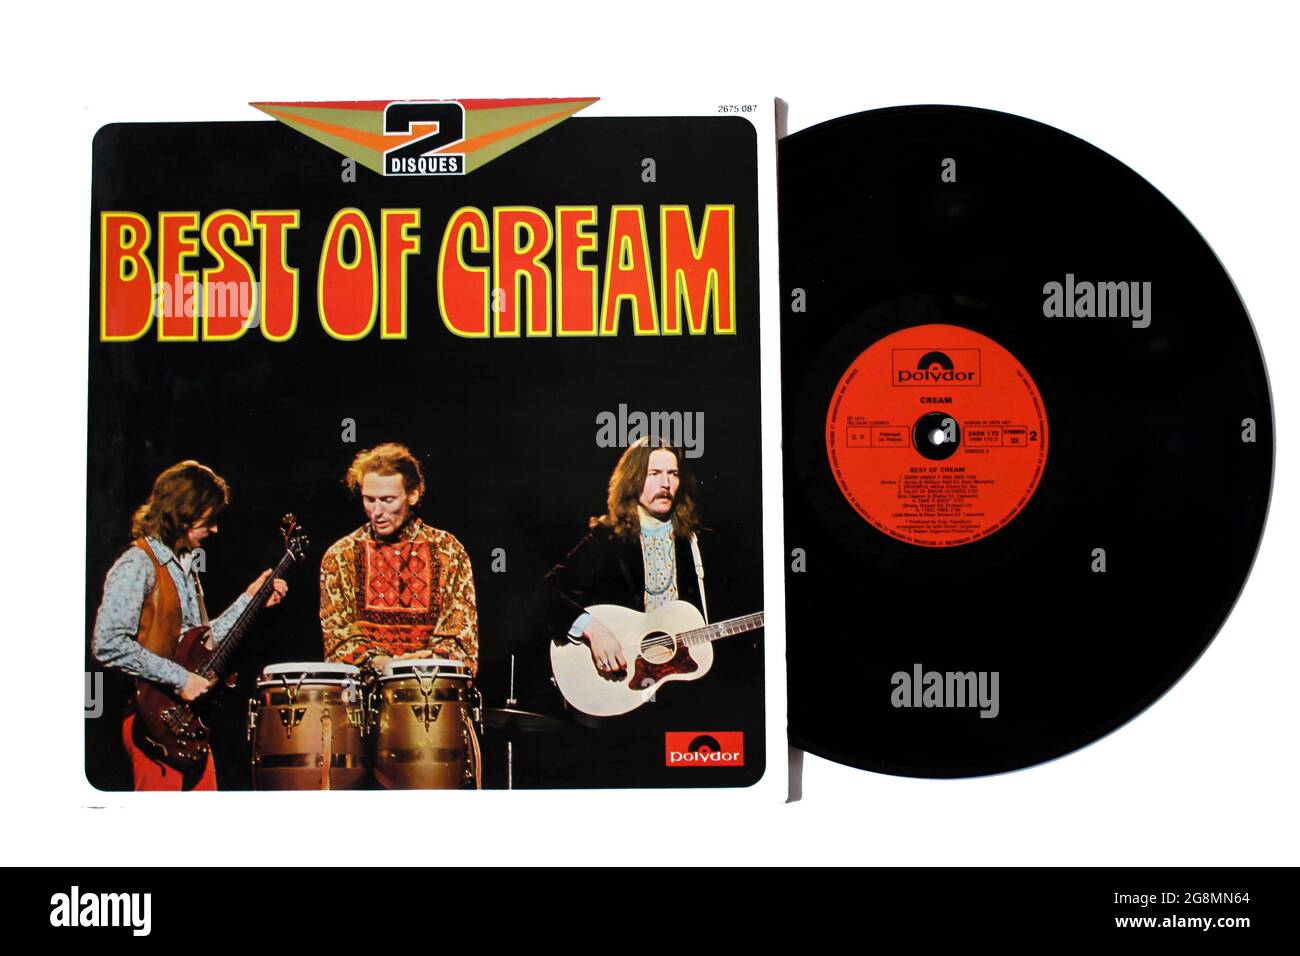 Gruppo psichedelico, blues e hard rock, album di musica Cream su disco LP con dischi in vinile. Titolo: Copertina dell'album Best of Cream Foto Stock